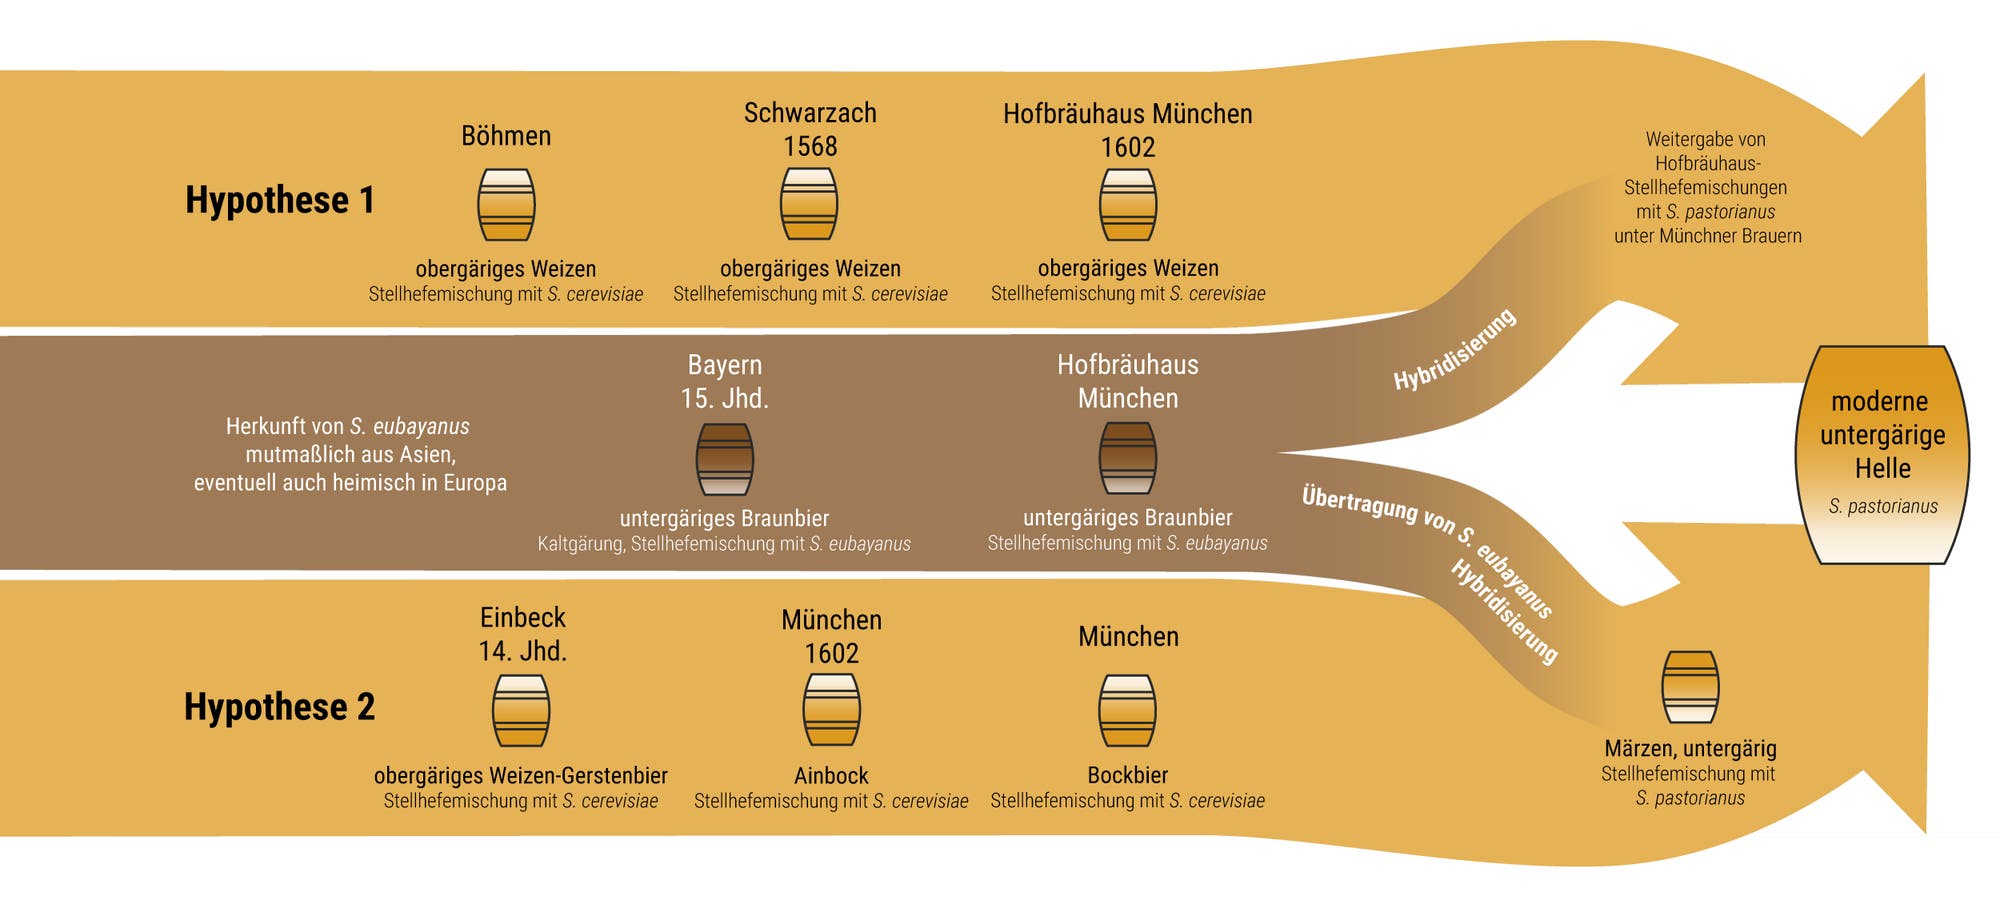 Grafik, die den Ursprung der modernen Bierhefe zeigt